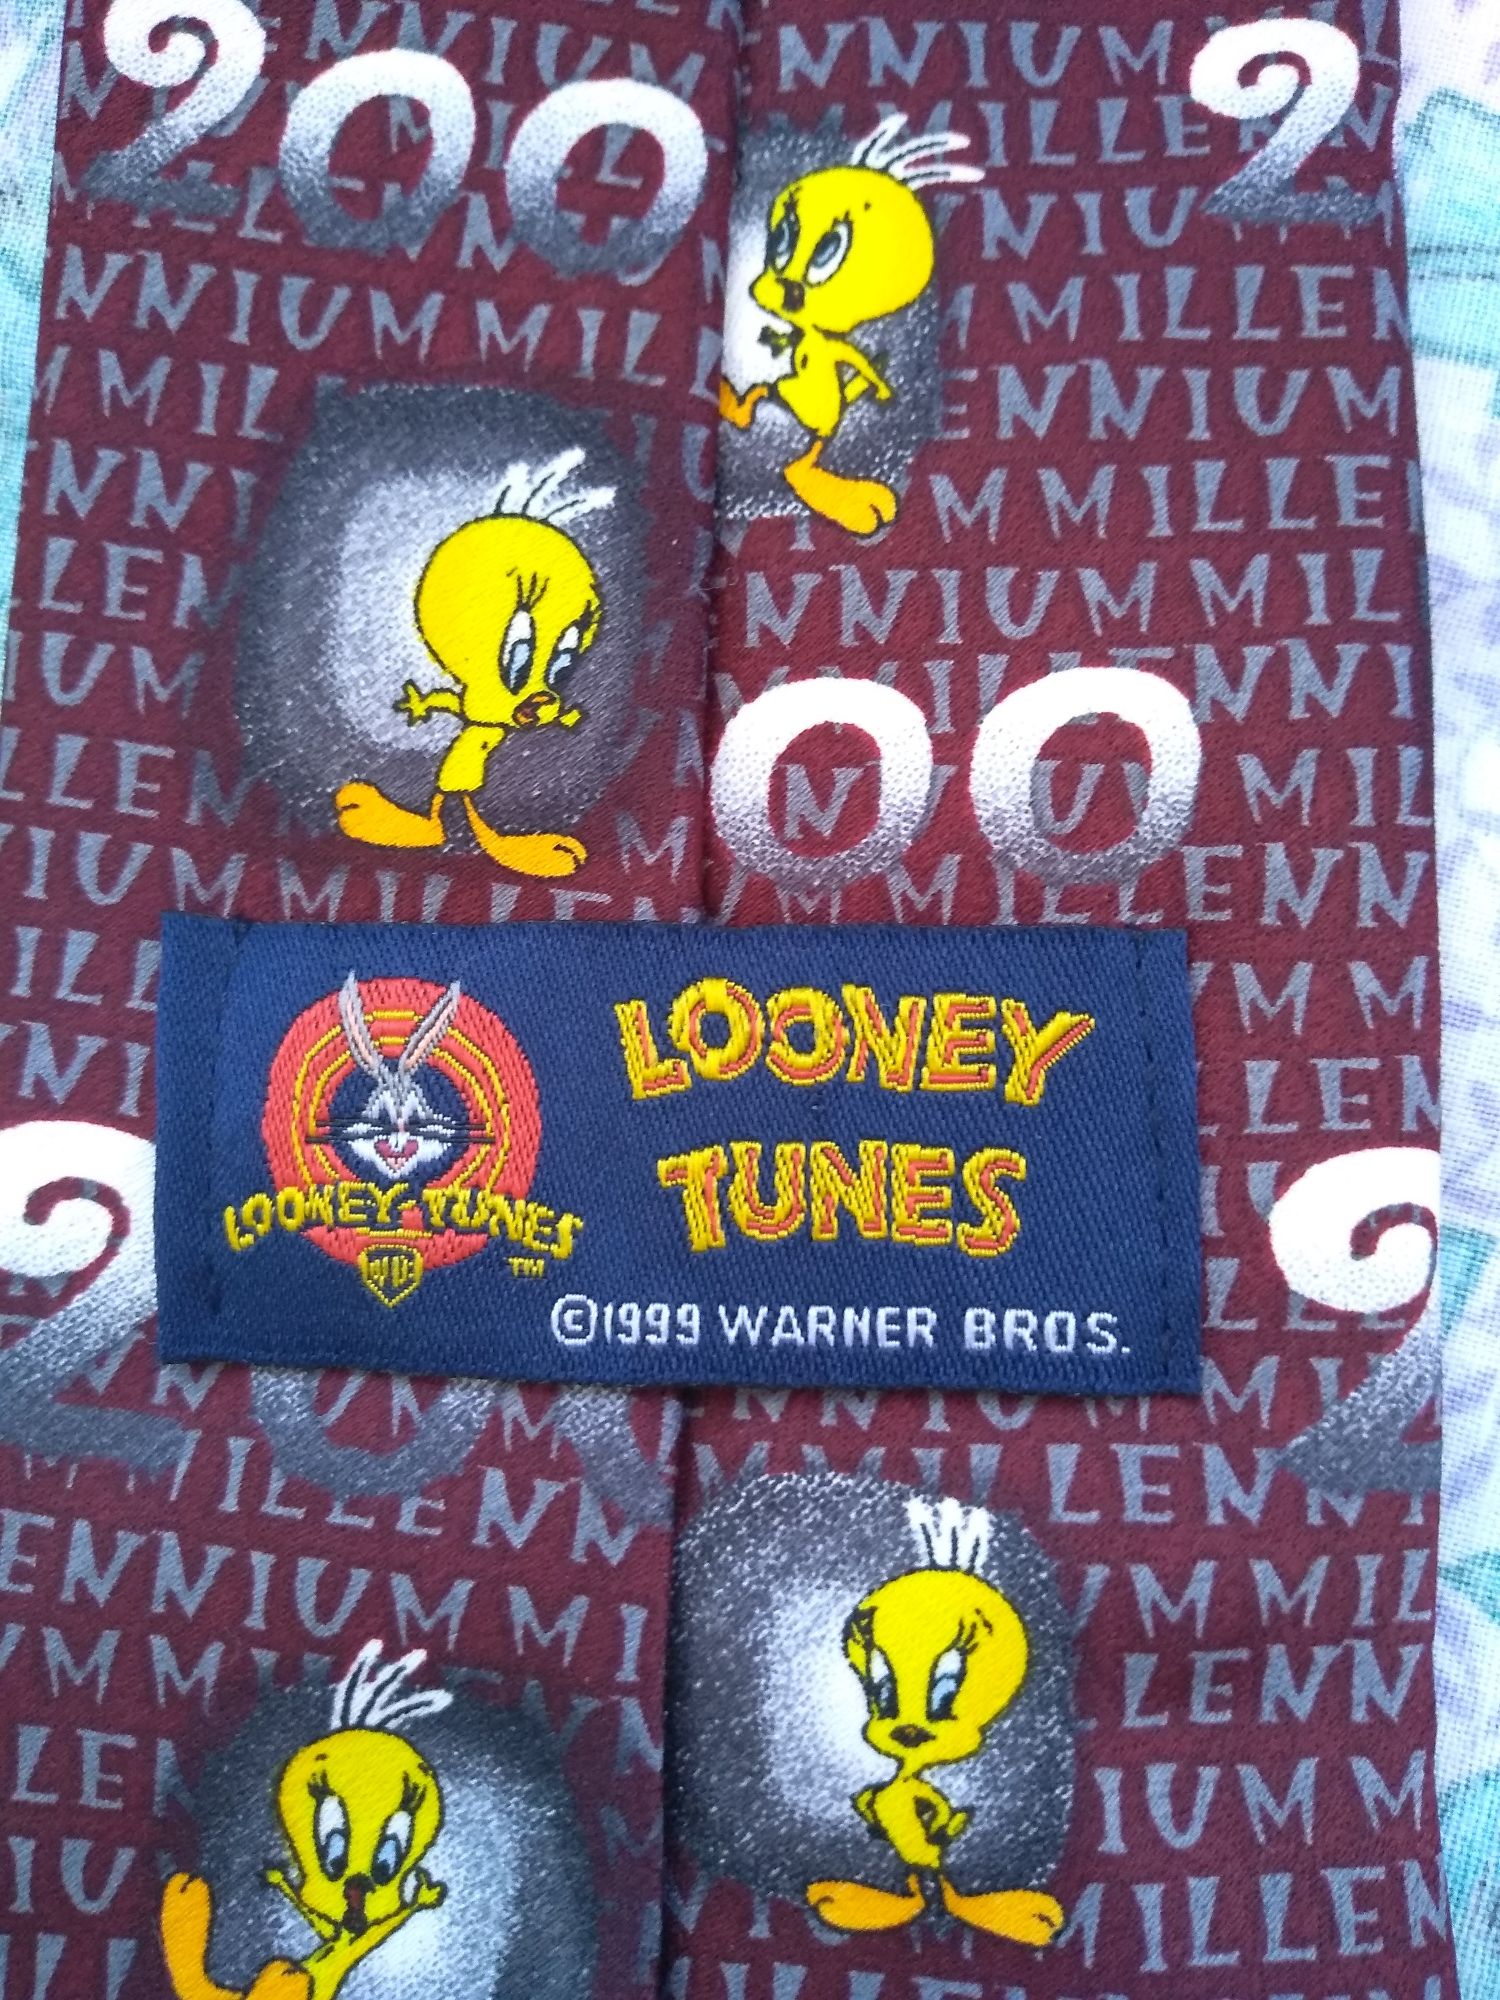 Cravată Looney Tunes Millenium 2000